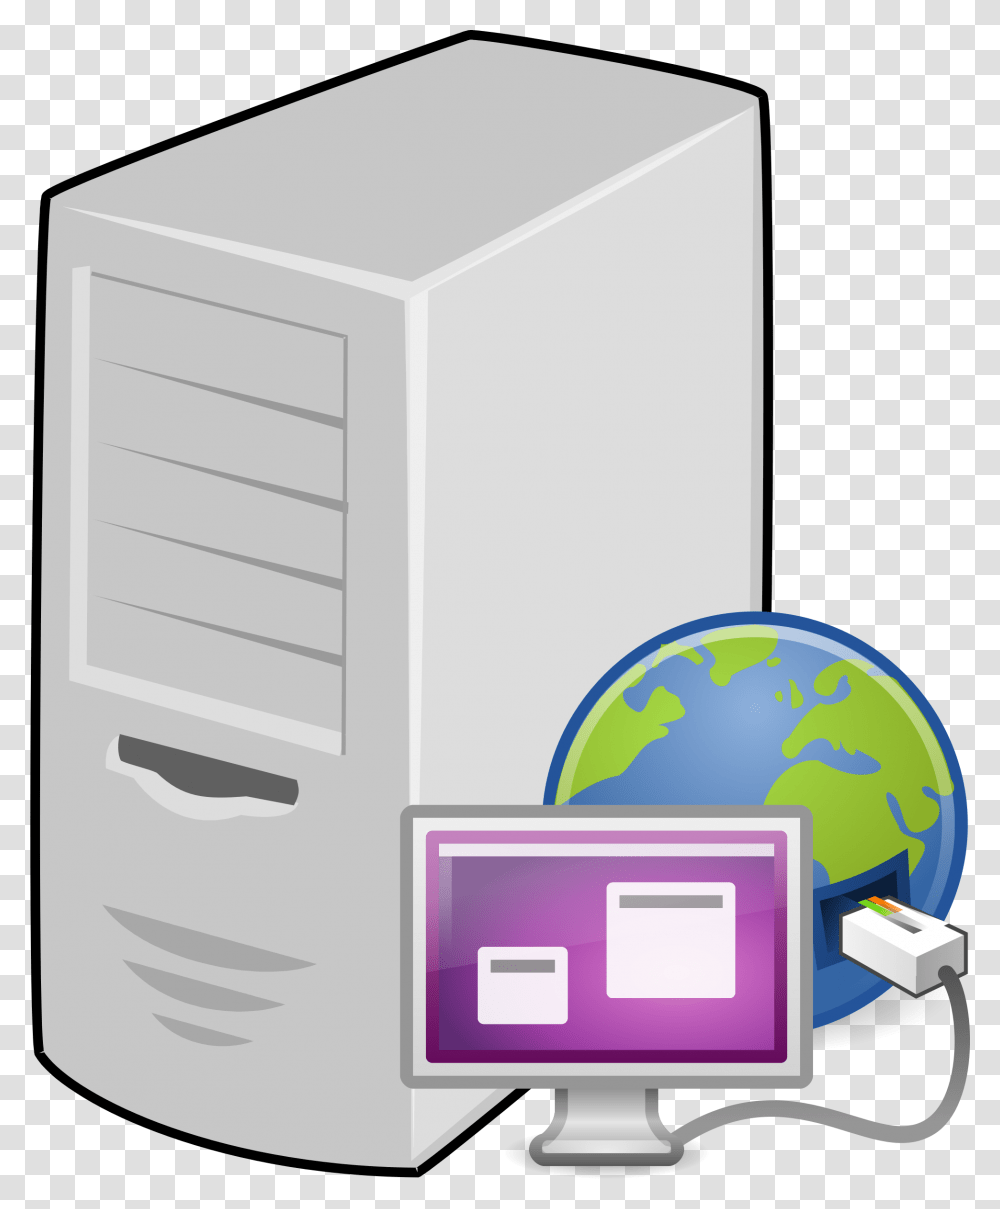 Terminal Server Icons, Computer, Electronics, Hardware, Mailbox Transparent Png